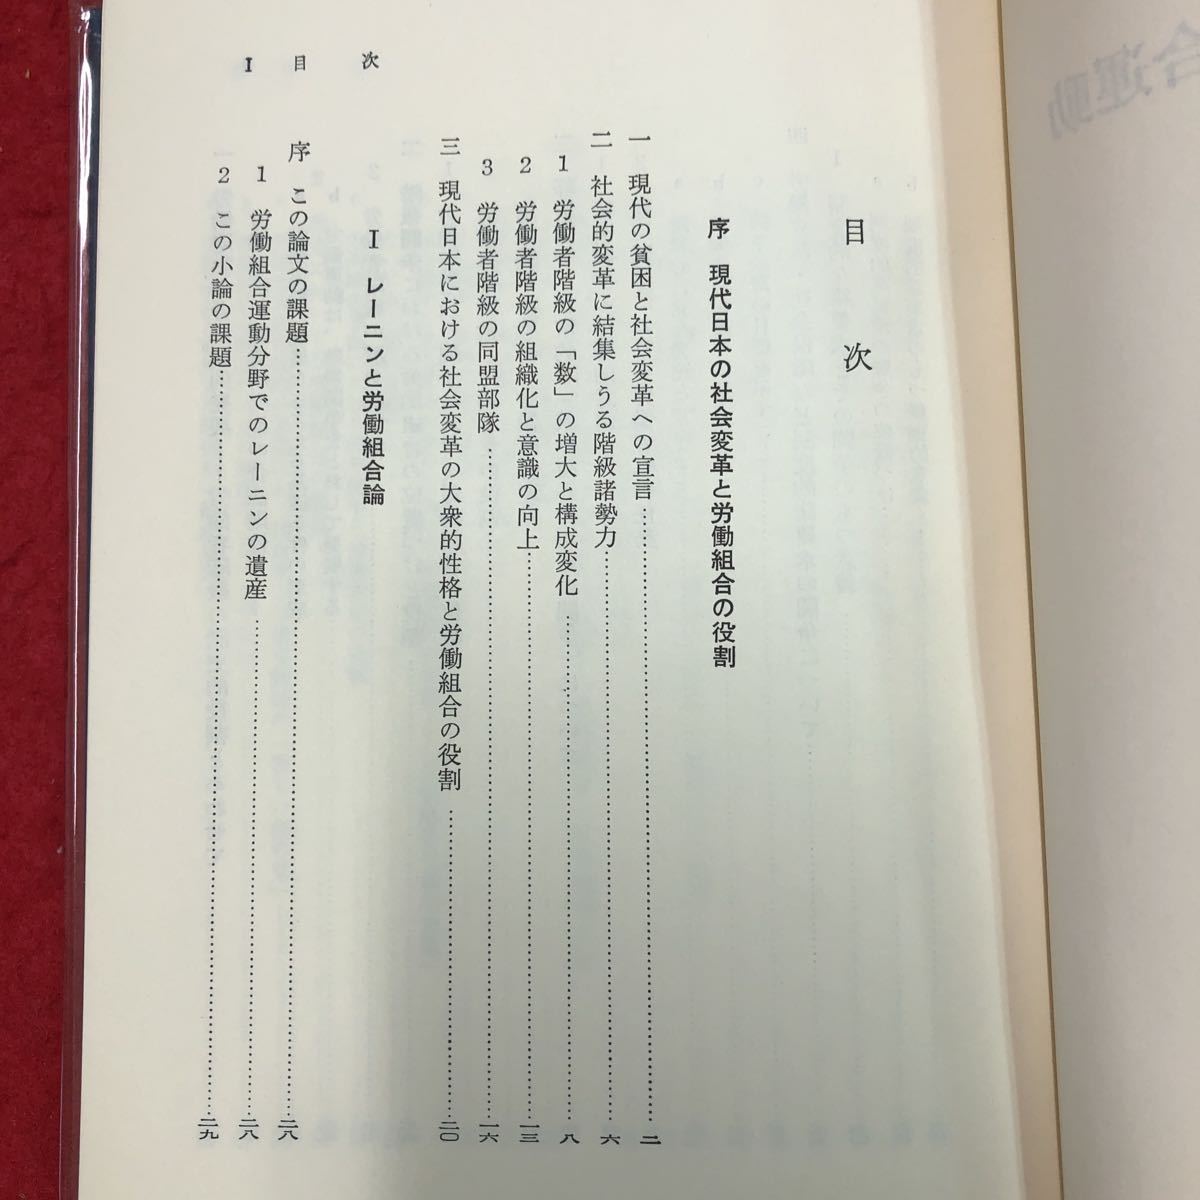 S6h-092 社会変革と労働組合運動 著者 戸木田嘉久 1977年4月20日 第3刷発行 大月書店 社会 労働 組合 階級 レーニン 論文 保障 日本 体制_画像4